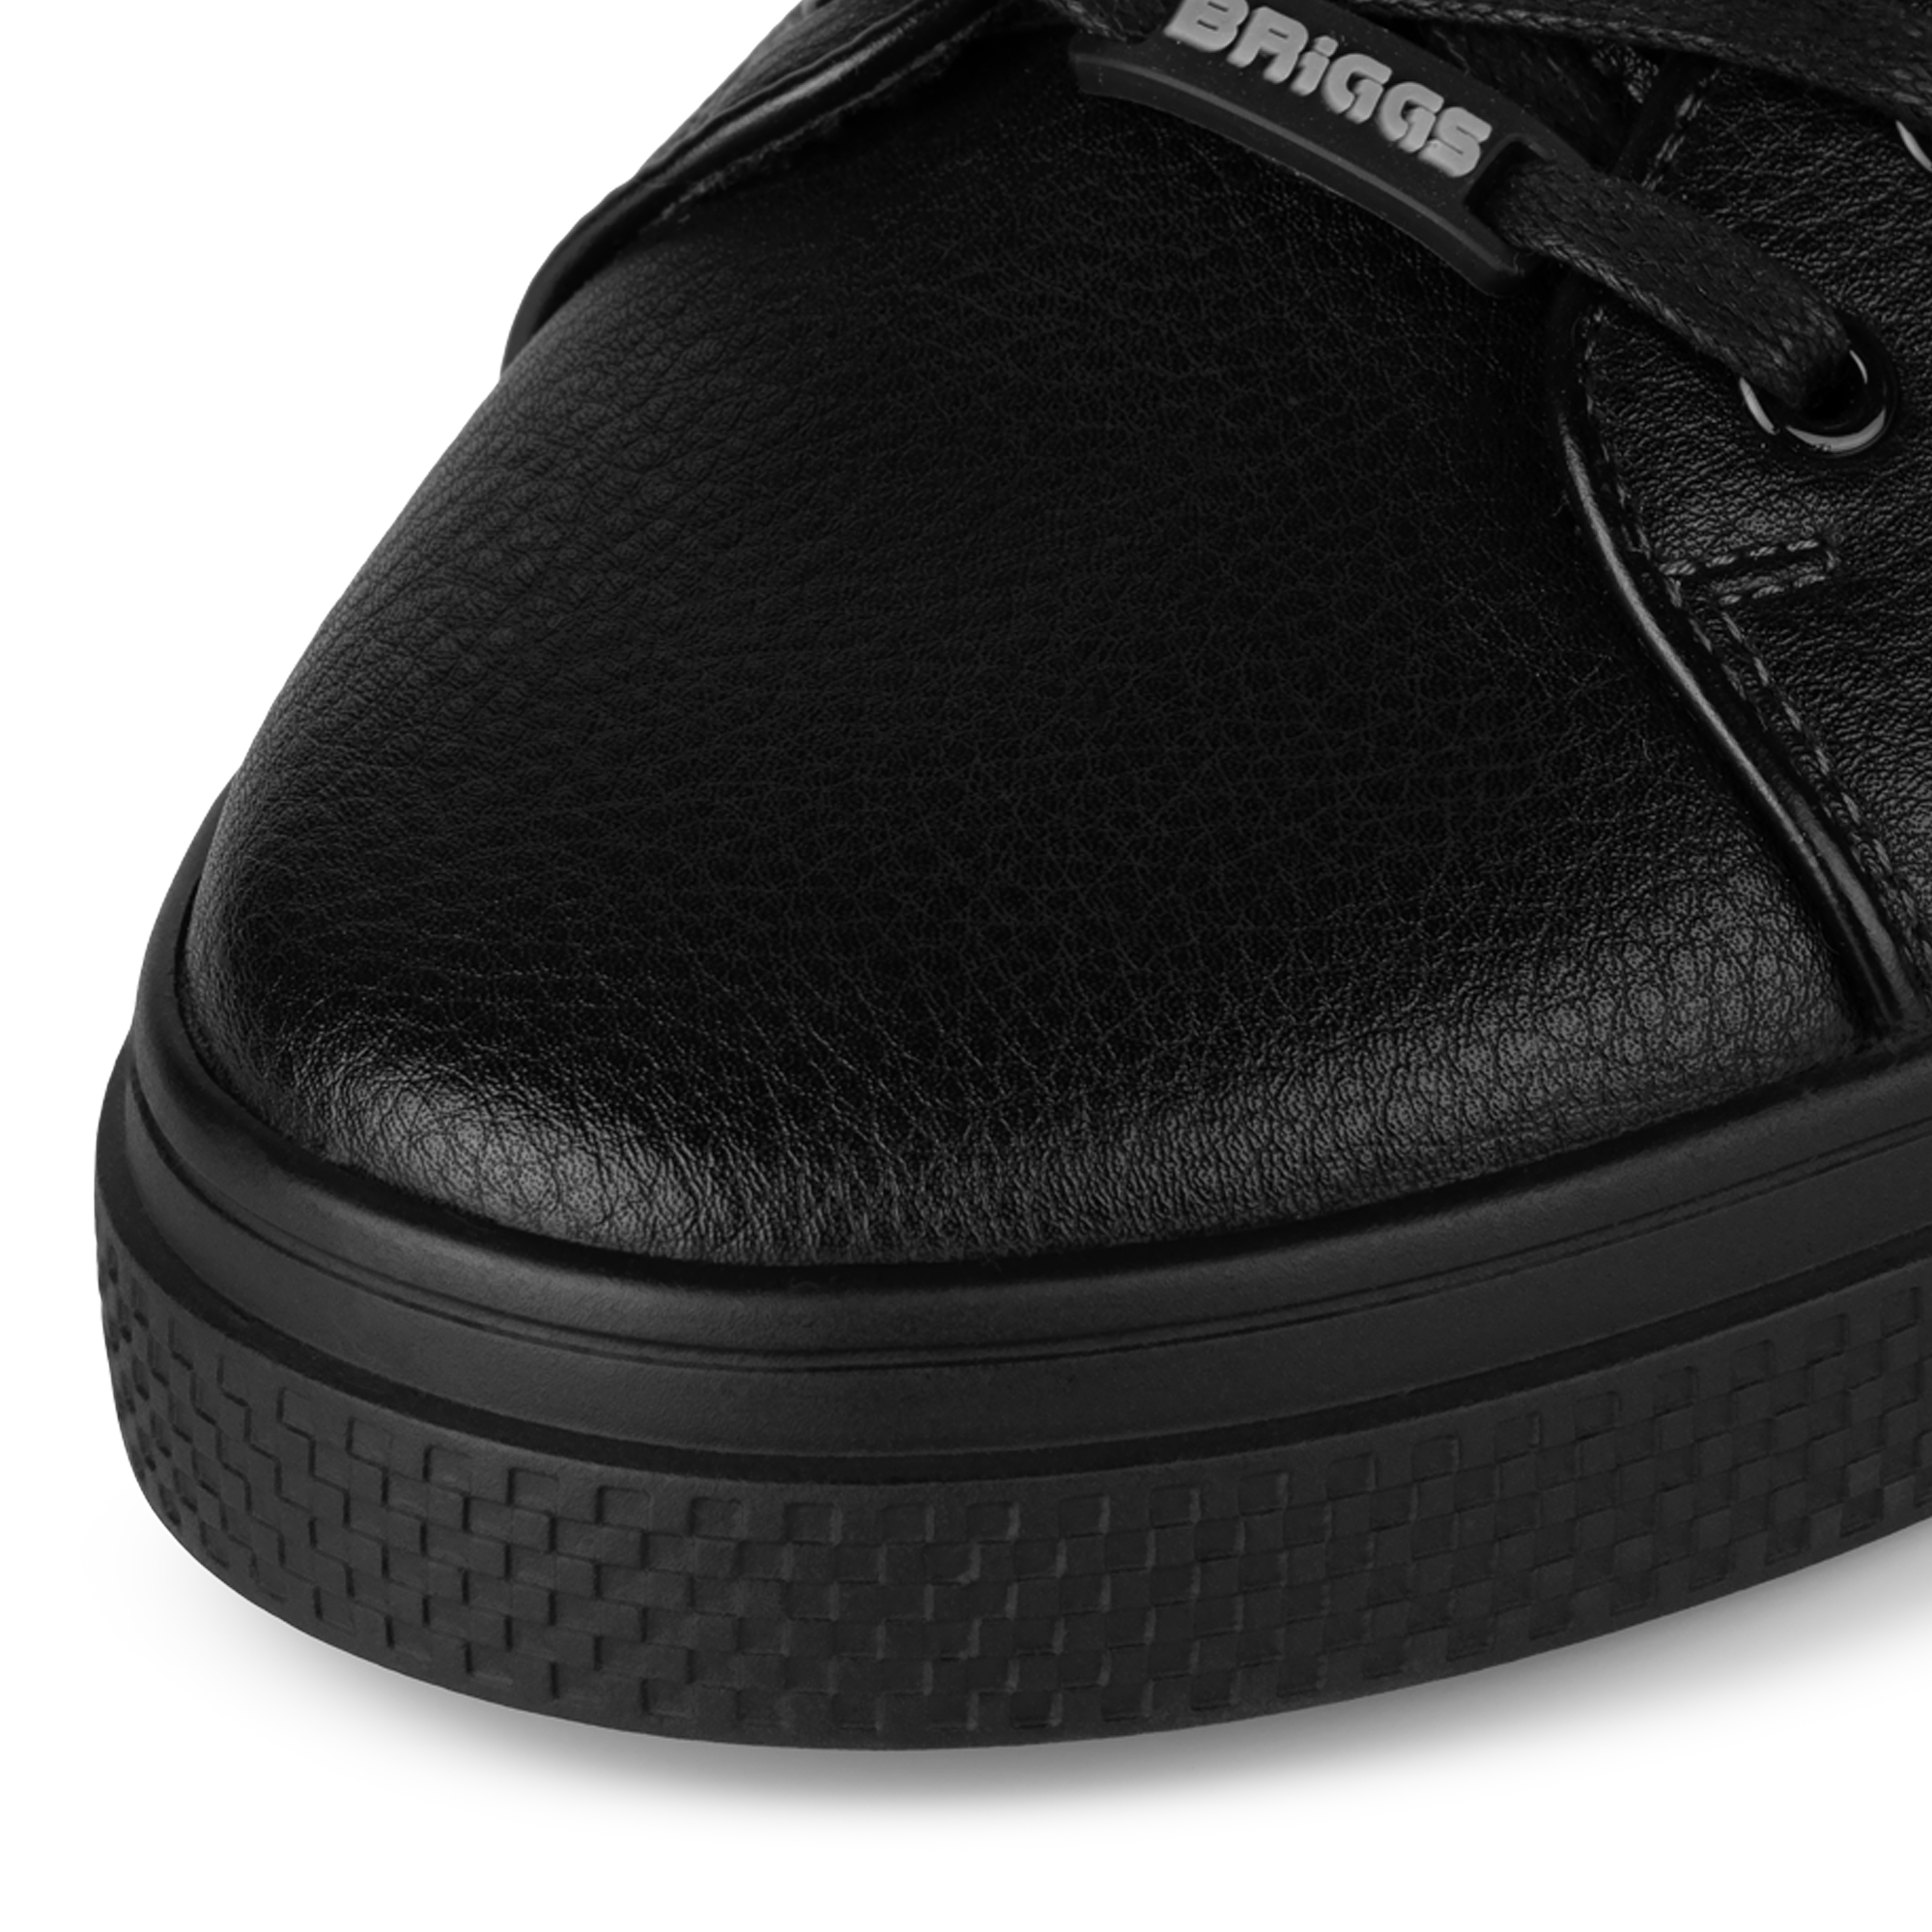 Обувь мужская отзывы покупателей. Ботинки Бриггс мужские. Туфли полуботинки Бриггс. Briggs ботинки 73-018k-2101. Полуботинки Briggs мужские.